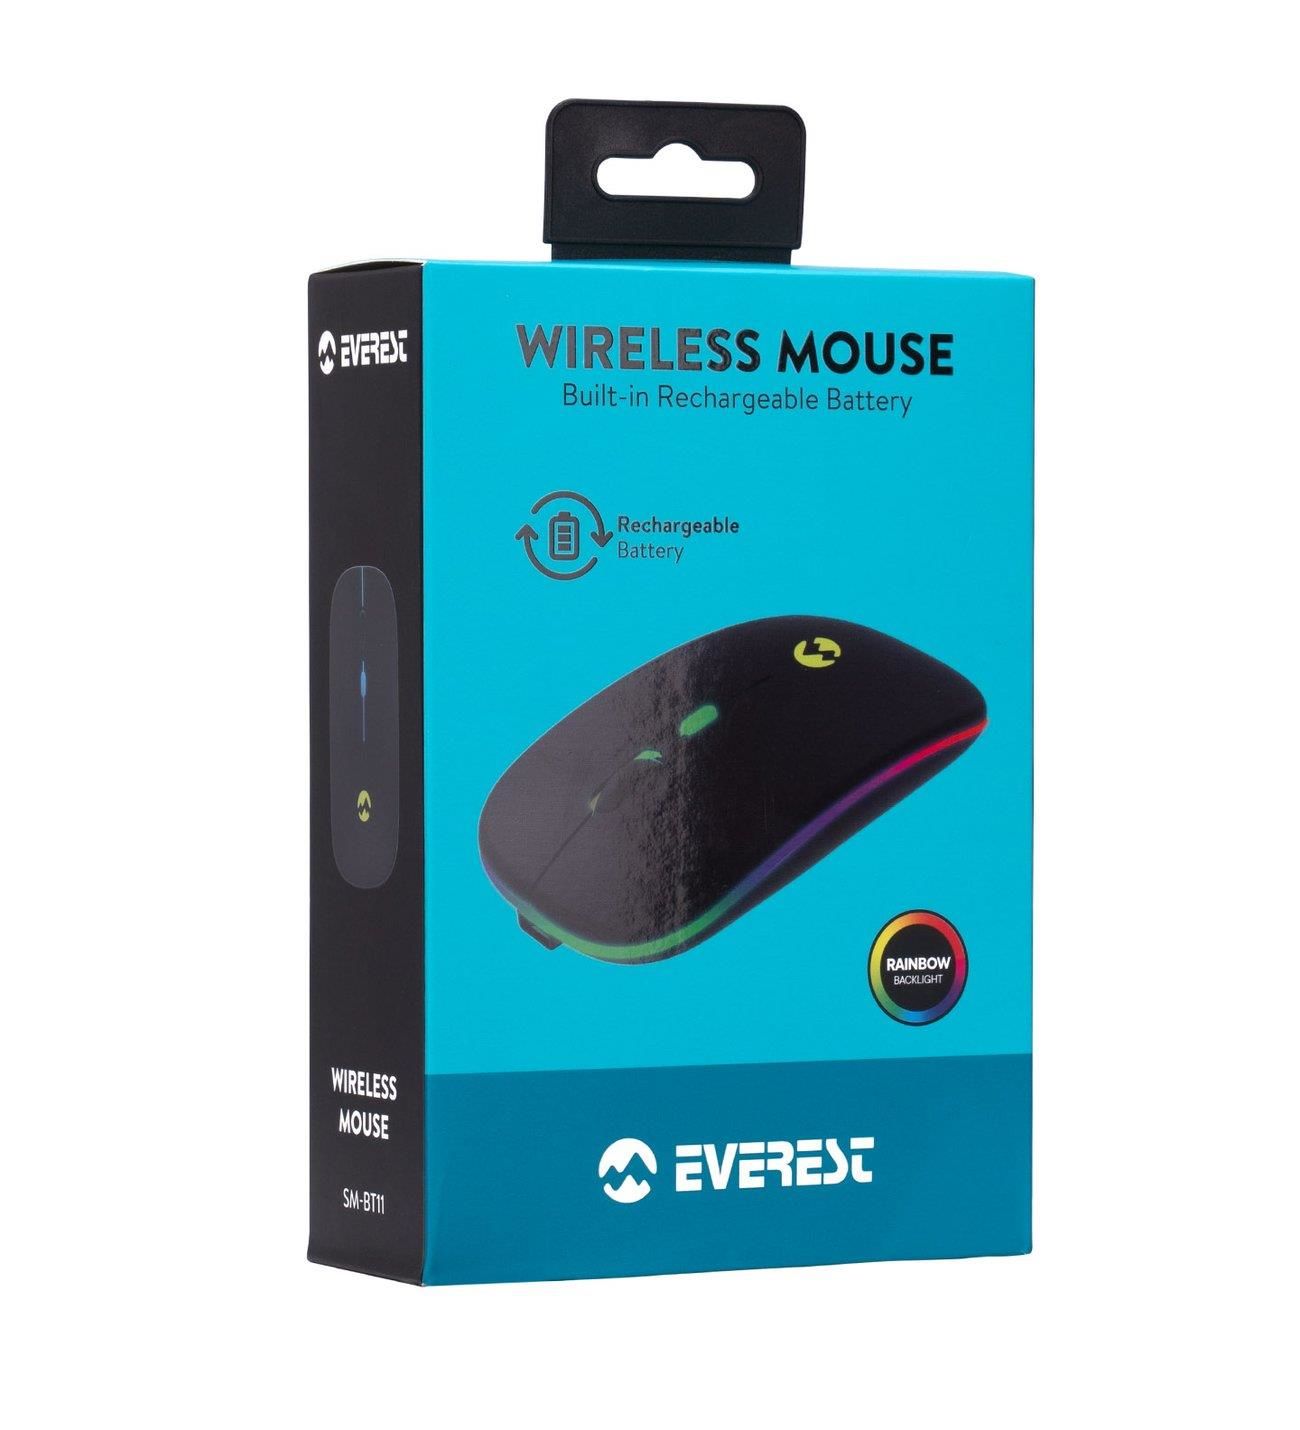 Everest SM-BT11 Usb Siyah 2in1 Bluetooth ve 2.4GHz Şarj Edilebilir Kablosuz Mouse